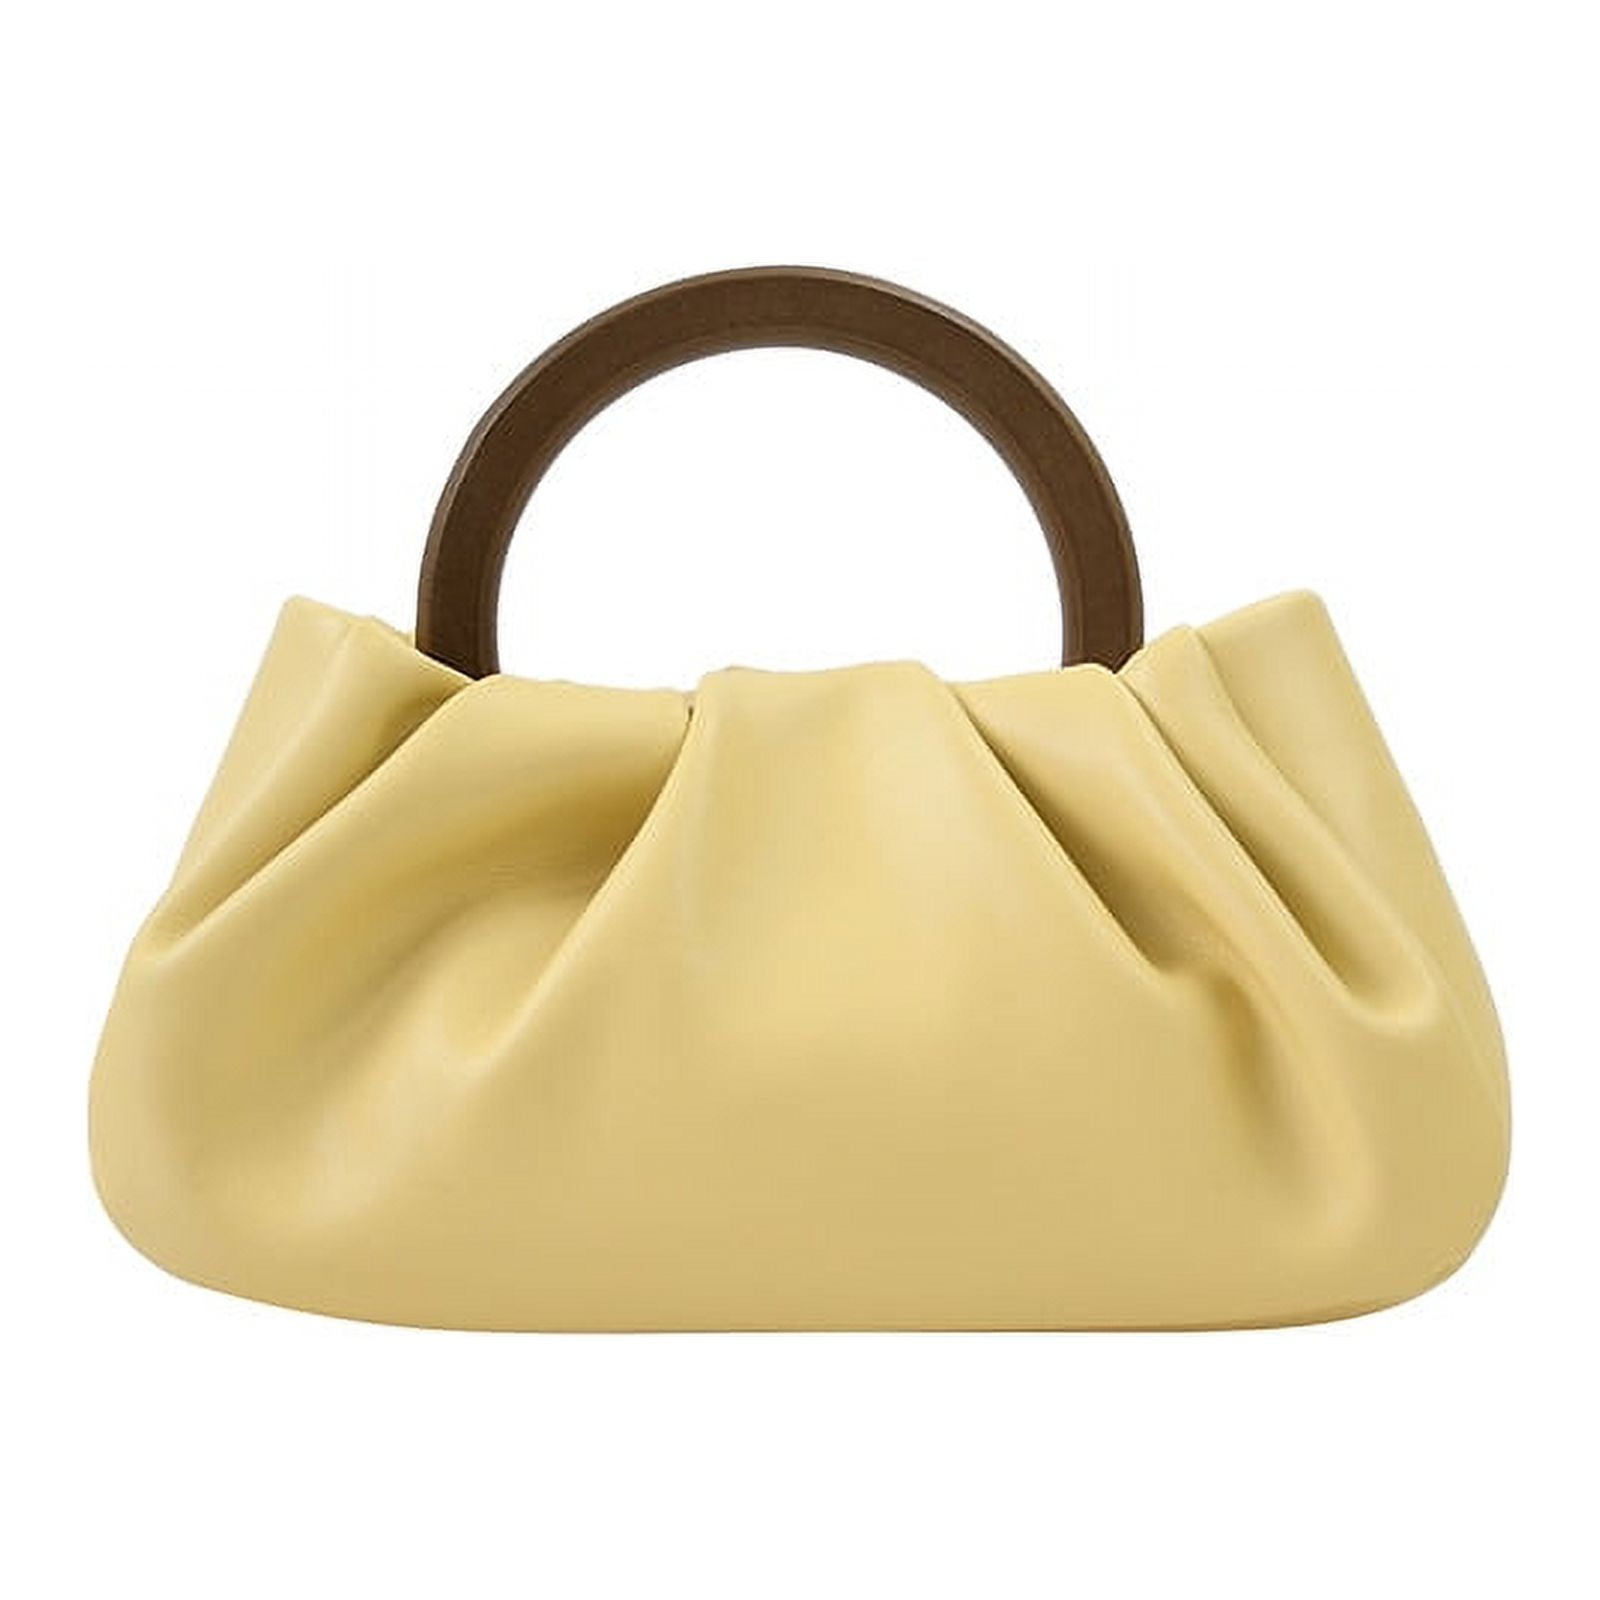 Fold Cloud Pouch Bag Handbag Vintage Chic Fashion Clutch Purse for Women Dumpling Shoulder Bag 0729d3f8 d453 430c a05d f1c588b43adf.dc8a1d066f1b522722646af6fc6cef68